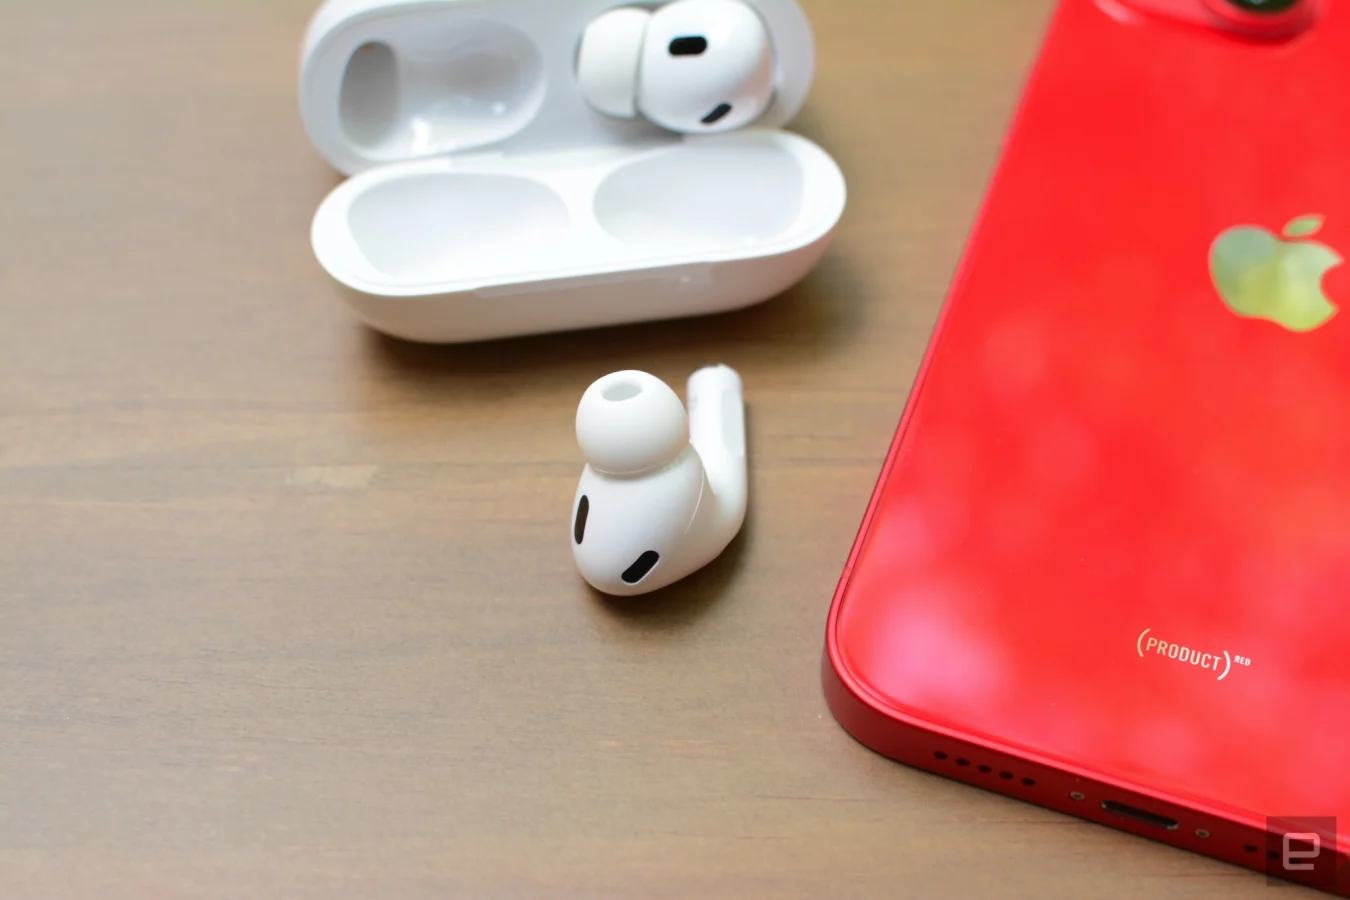 Trotz des unveränderten Designs hat Apple eine Reihe von Updates in die neuen AirPods Pro gepackt.  Alle Annehmlichkeiten des Modells 2019 sind ebenfalls vorhanden, neben Ergänzungen wie adaptiver Transparenz, personalisiertem räumlichem Audio und einer neuen Touch-Geste im Schlepptau.  Es gibt Raum, um die bekannte Formel weiter zu verfeinern, aber Apple hat iPhone-Besitzern mehrere Gründe für ein Upgrade gegeben.